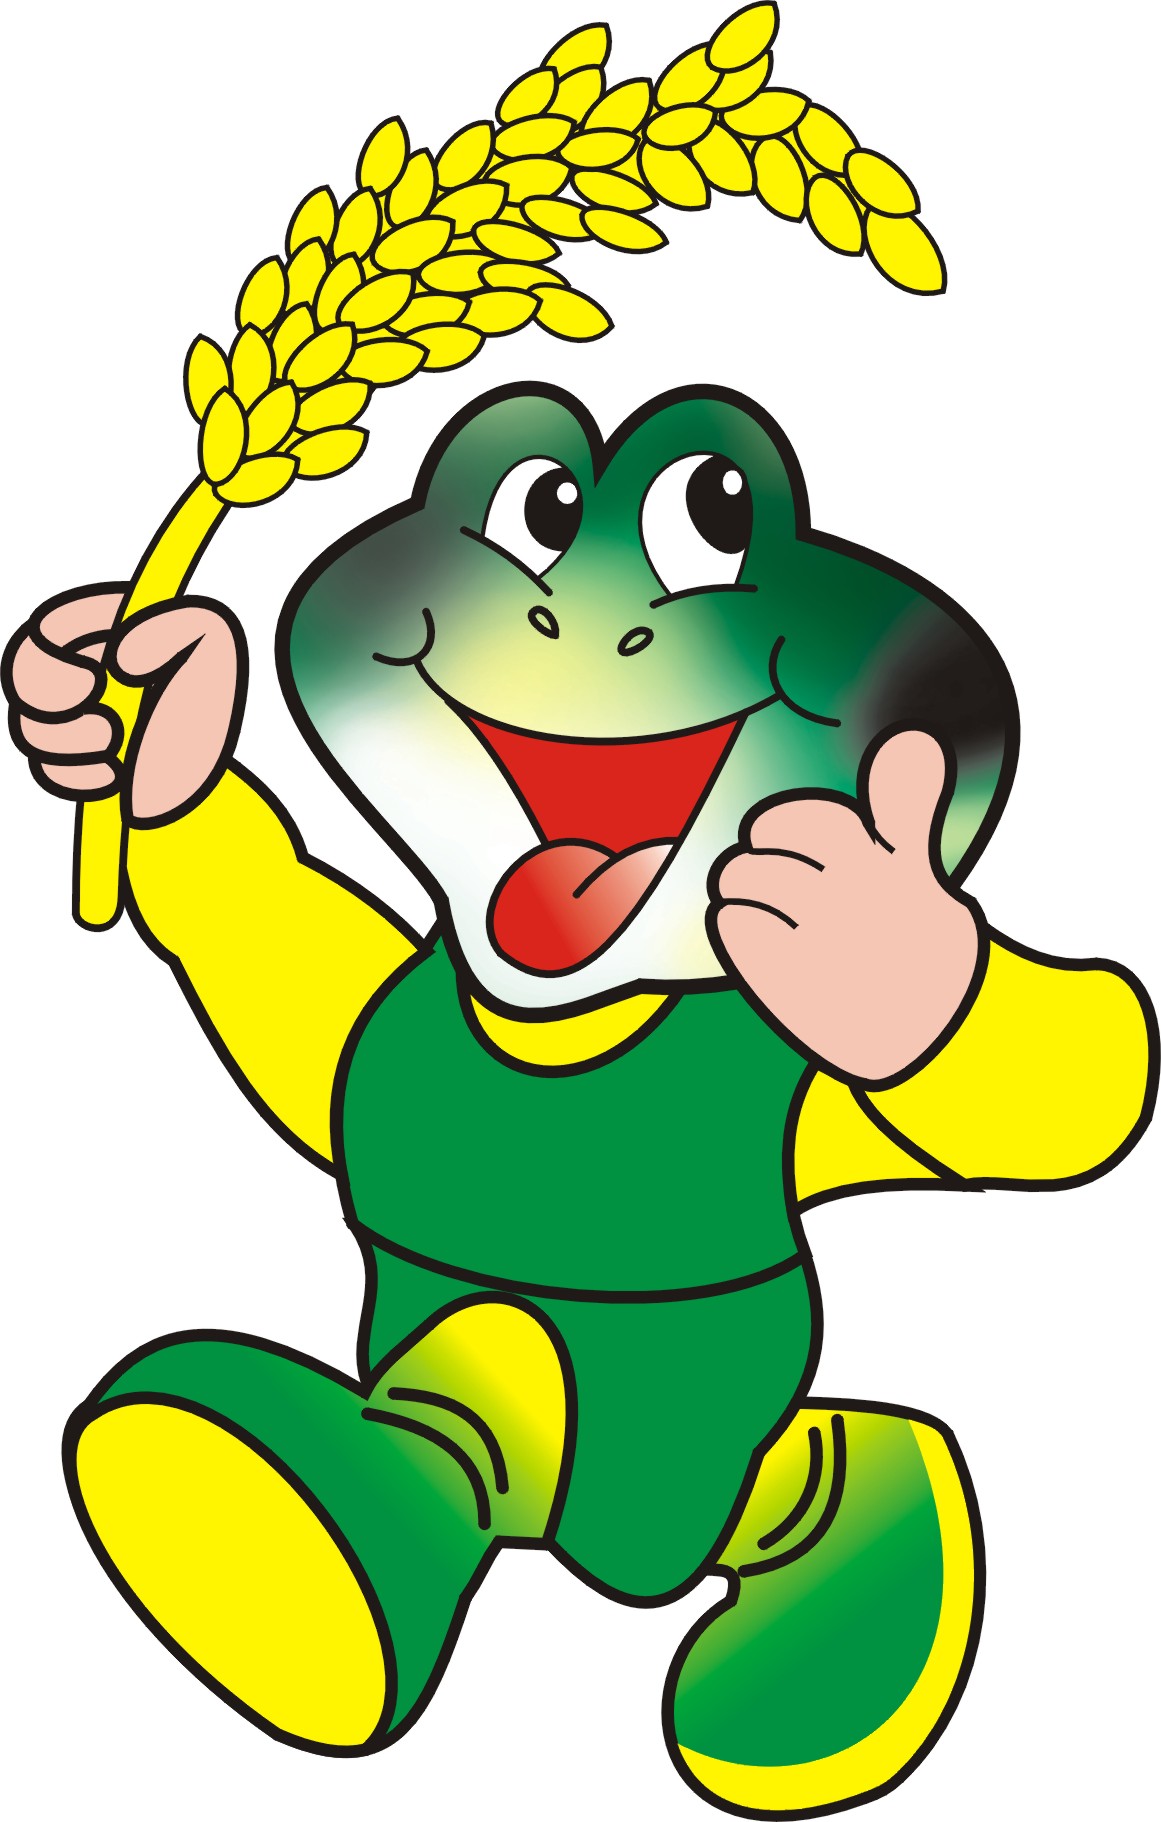 第三屆全國農民運動會吉祥物